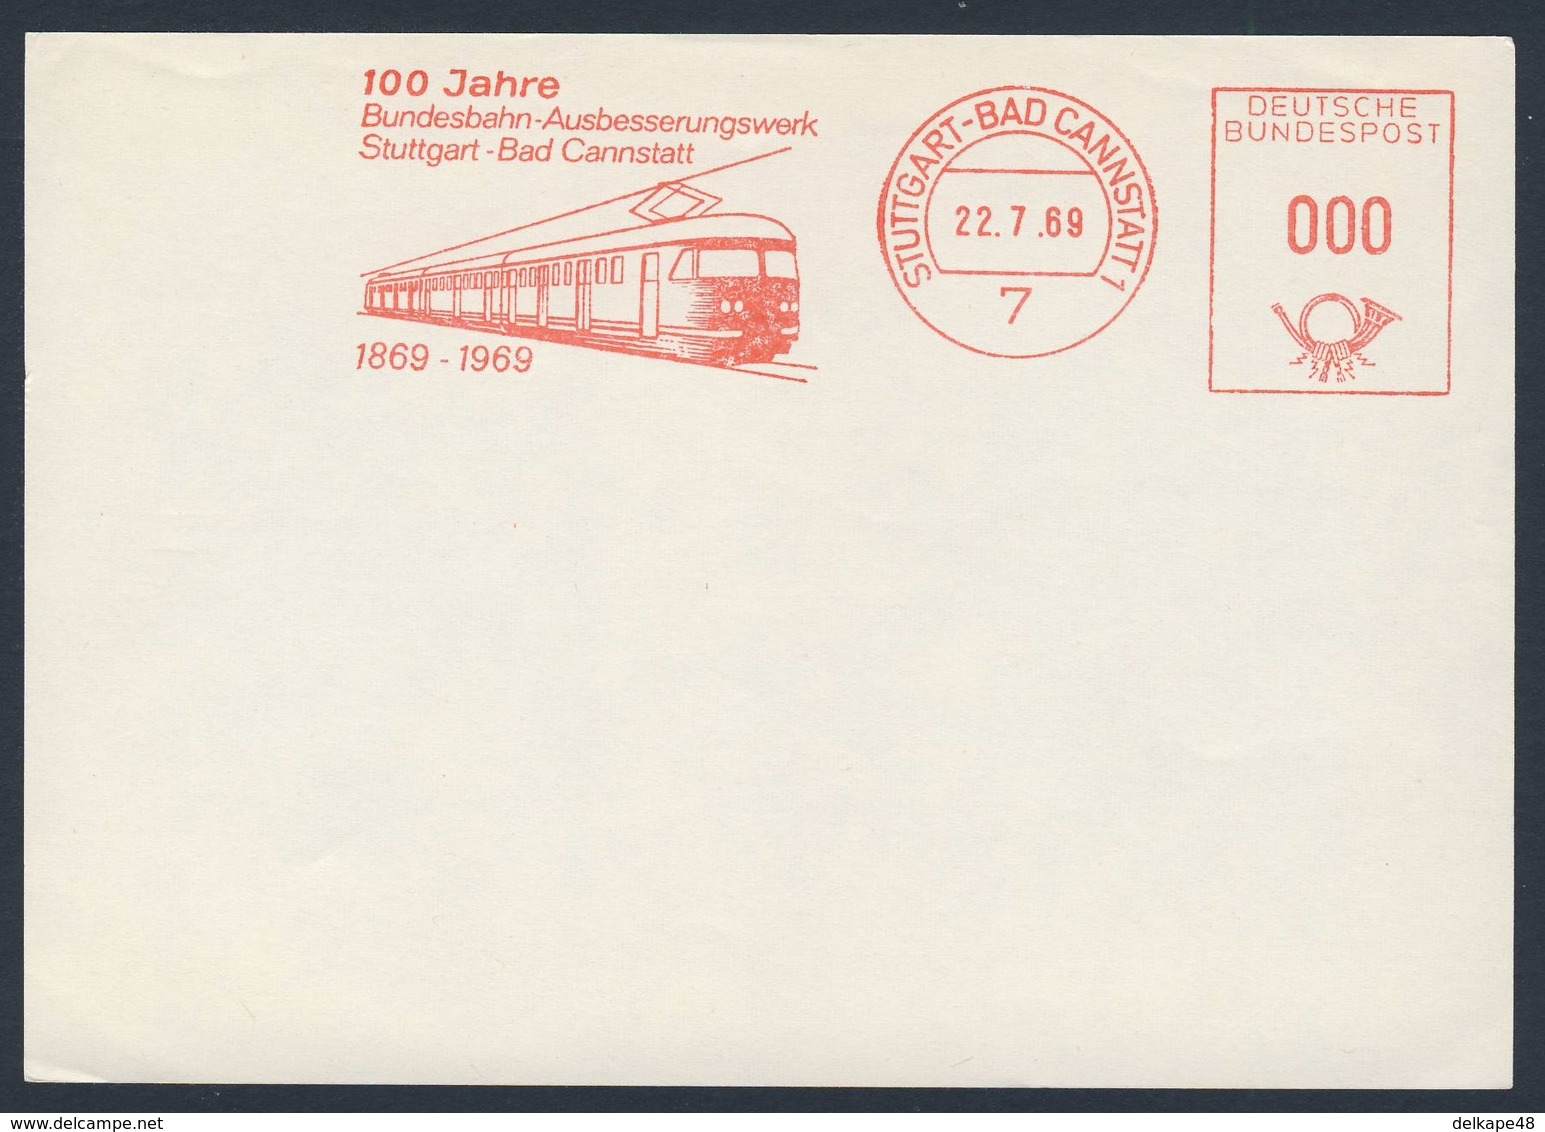 Deutschland Germany 1969 Adressband - 100 Jahre Bundesbahn-Ausbesserungswerk Stuttgart - Bad Cannstatt - 1869-1969 - Treinen